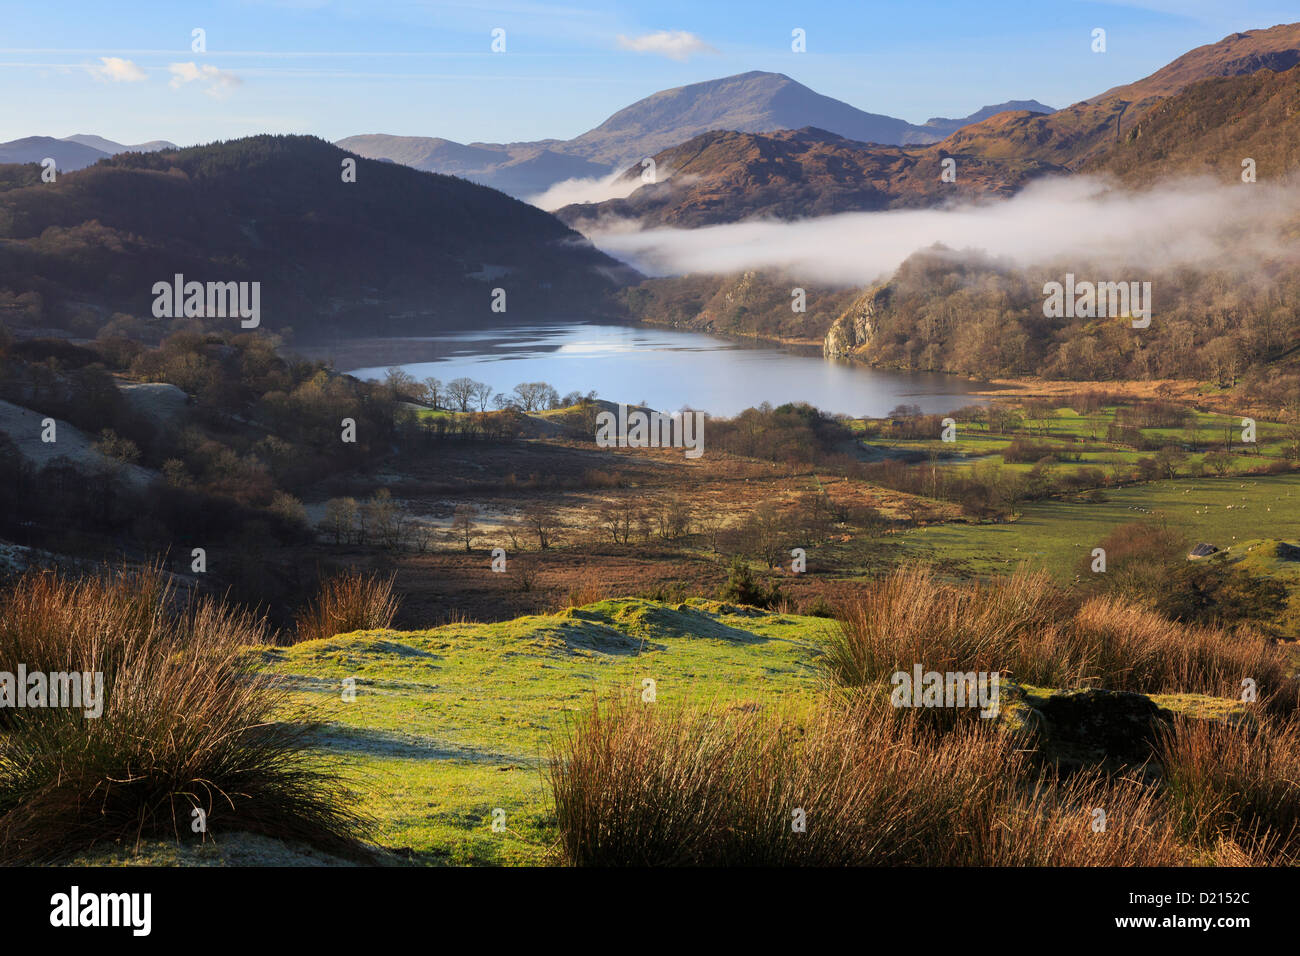 Snowdonia landschaftlich schöner Blick entlang Nantgwynant zum Llyn Gwynant See mit Morgennebel in den Bergen des Snowdonia National Park Wales Großbritannien Stockfoto